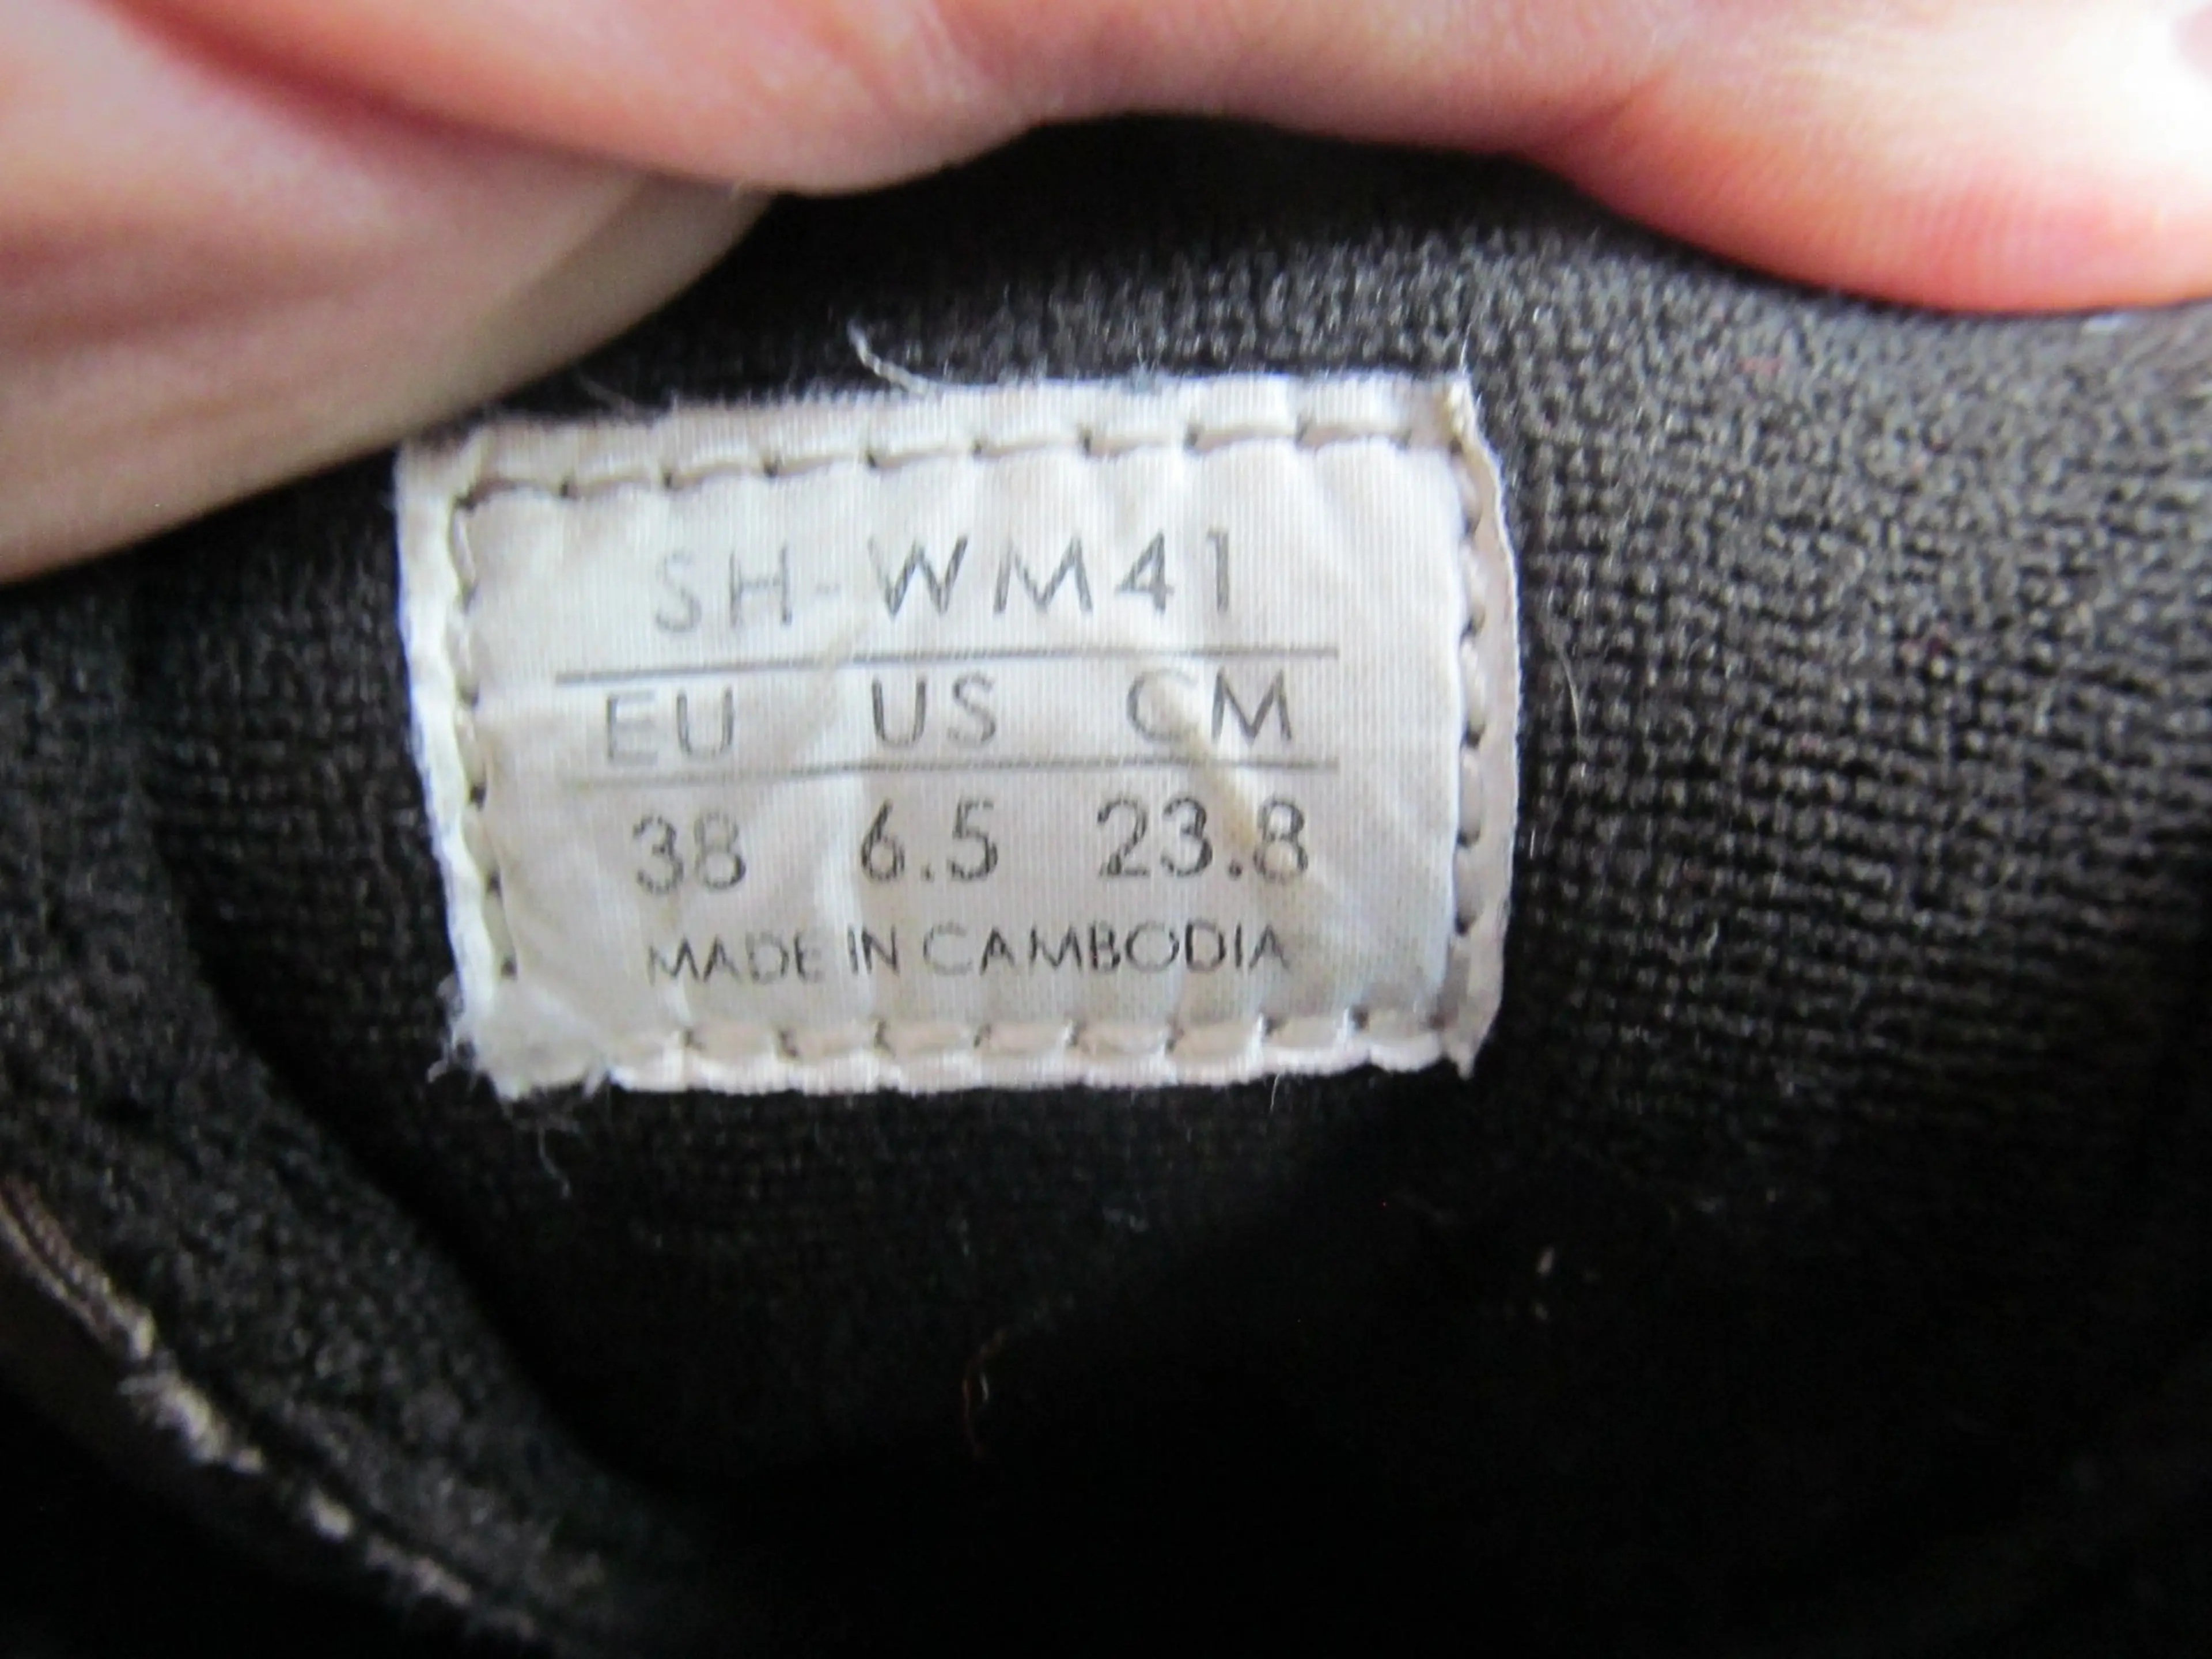 3. Pantofi Shimano SH-WM41 nr 38, 23.8 cm